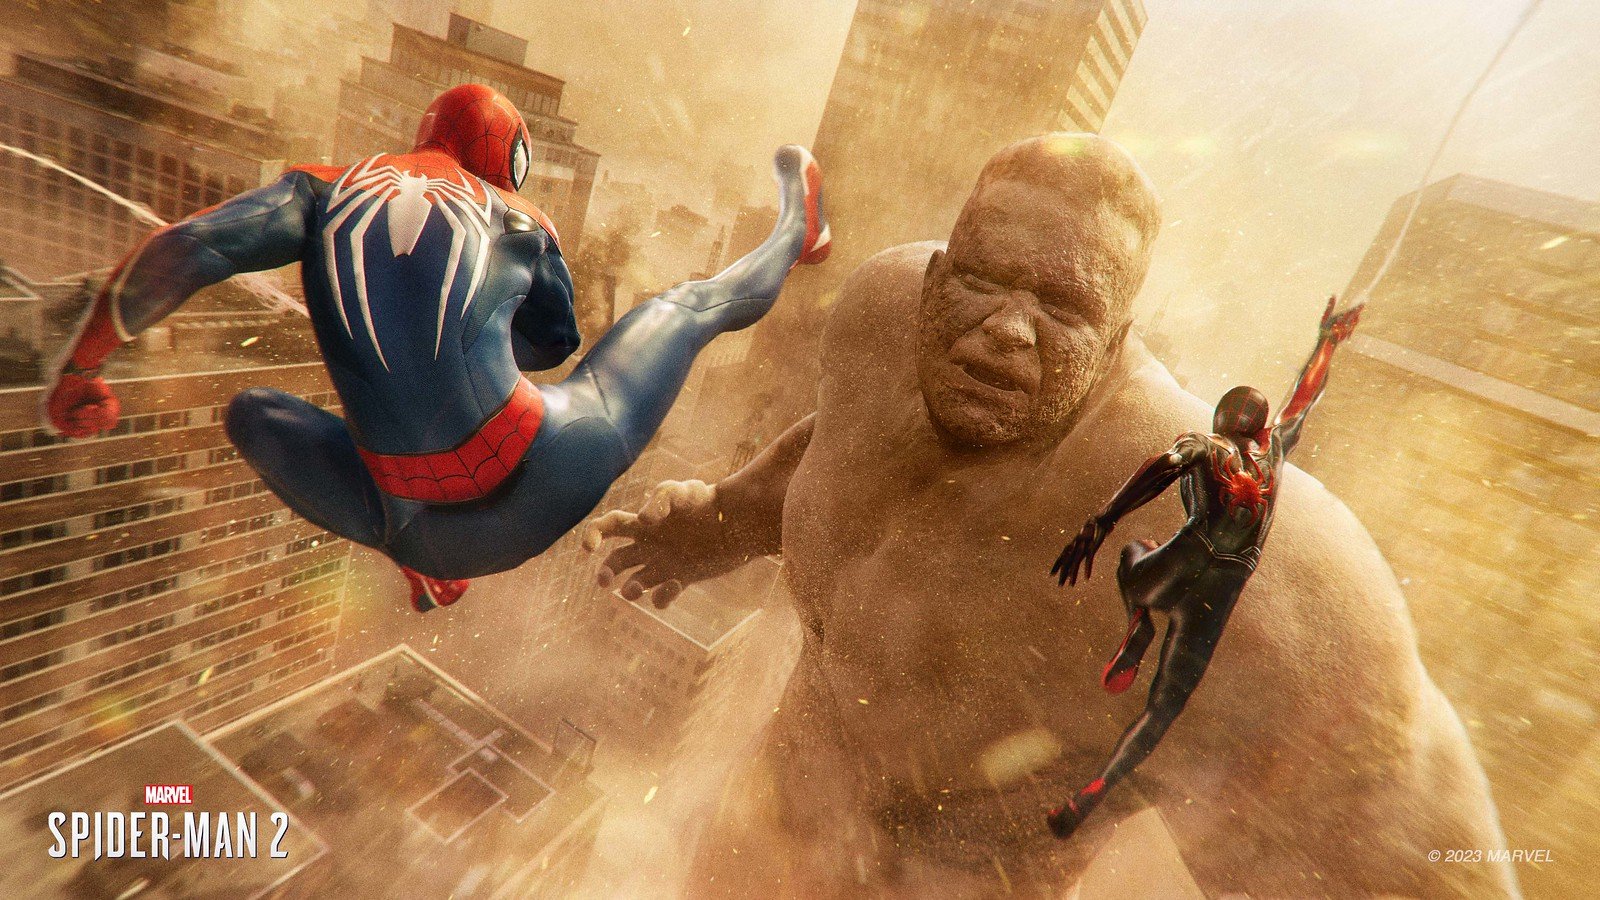 The Amazing Spiderman 2 (Xbox One) 